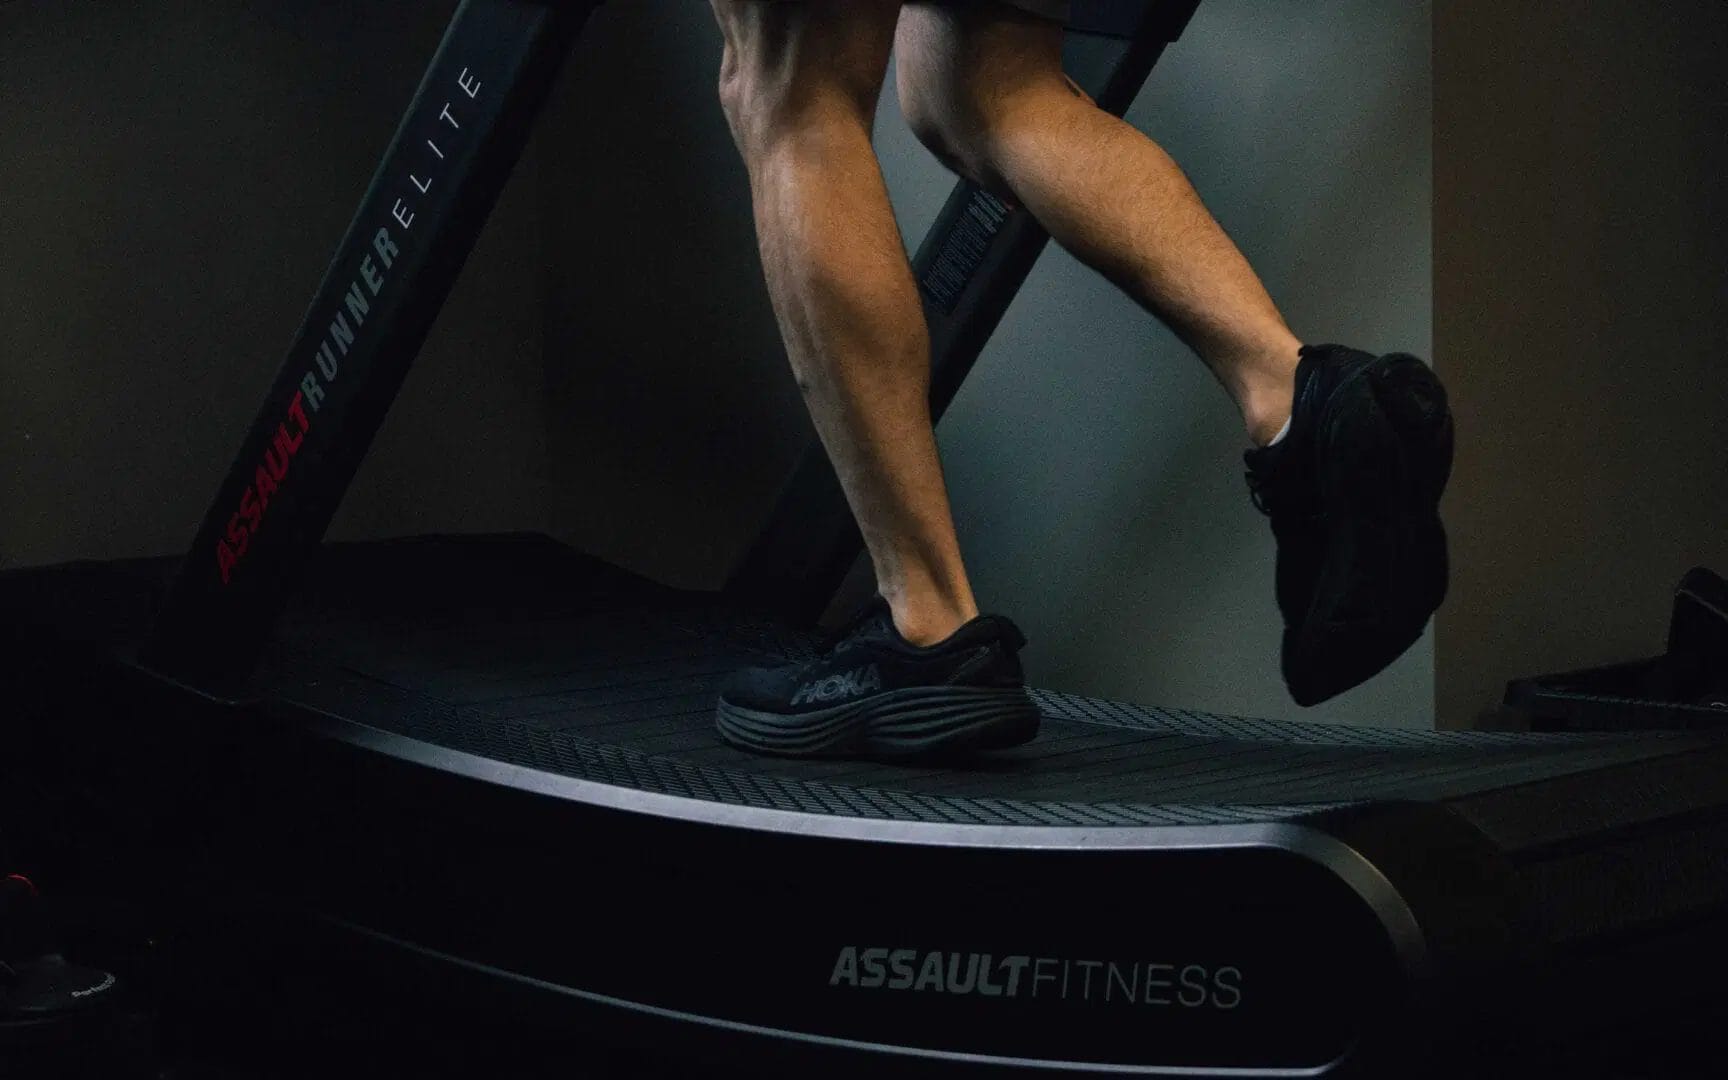 An athlete on a treadmill